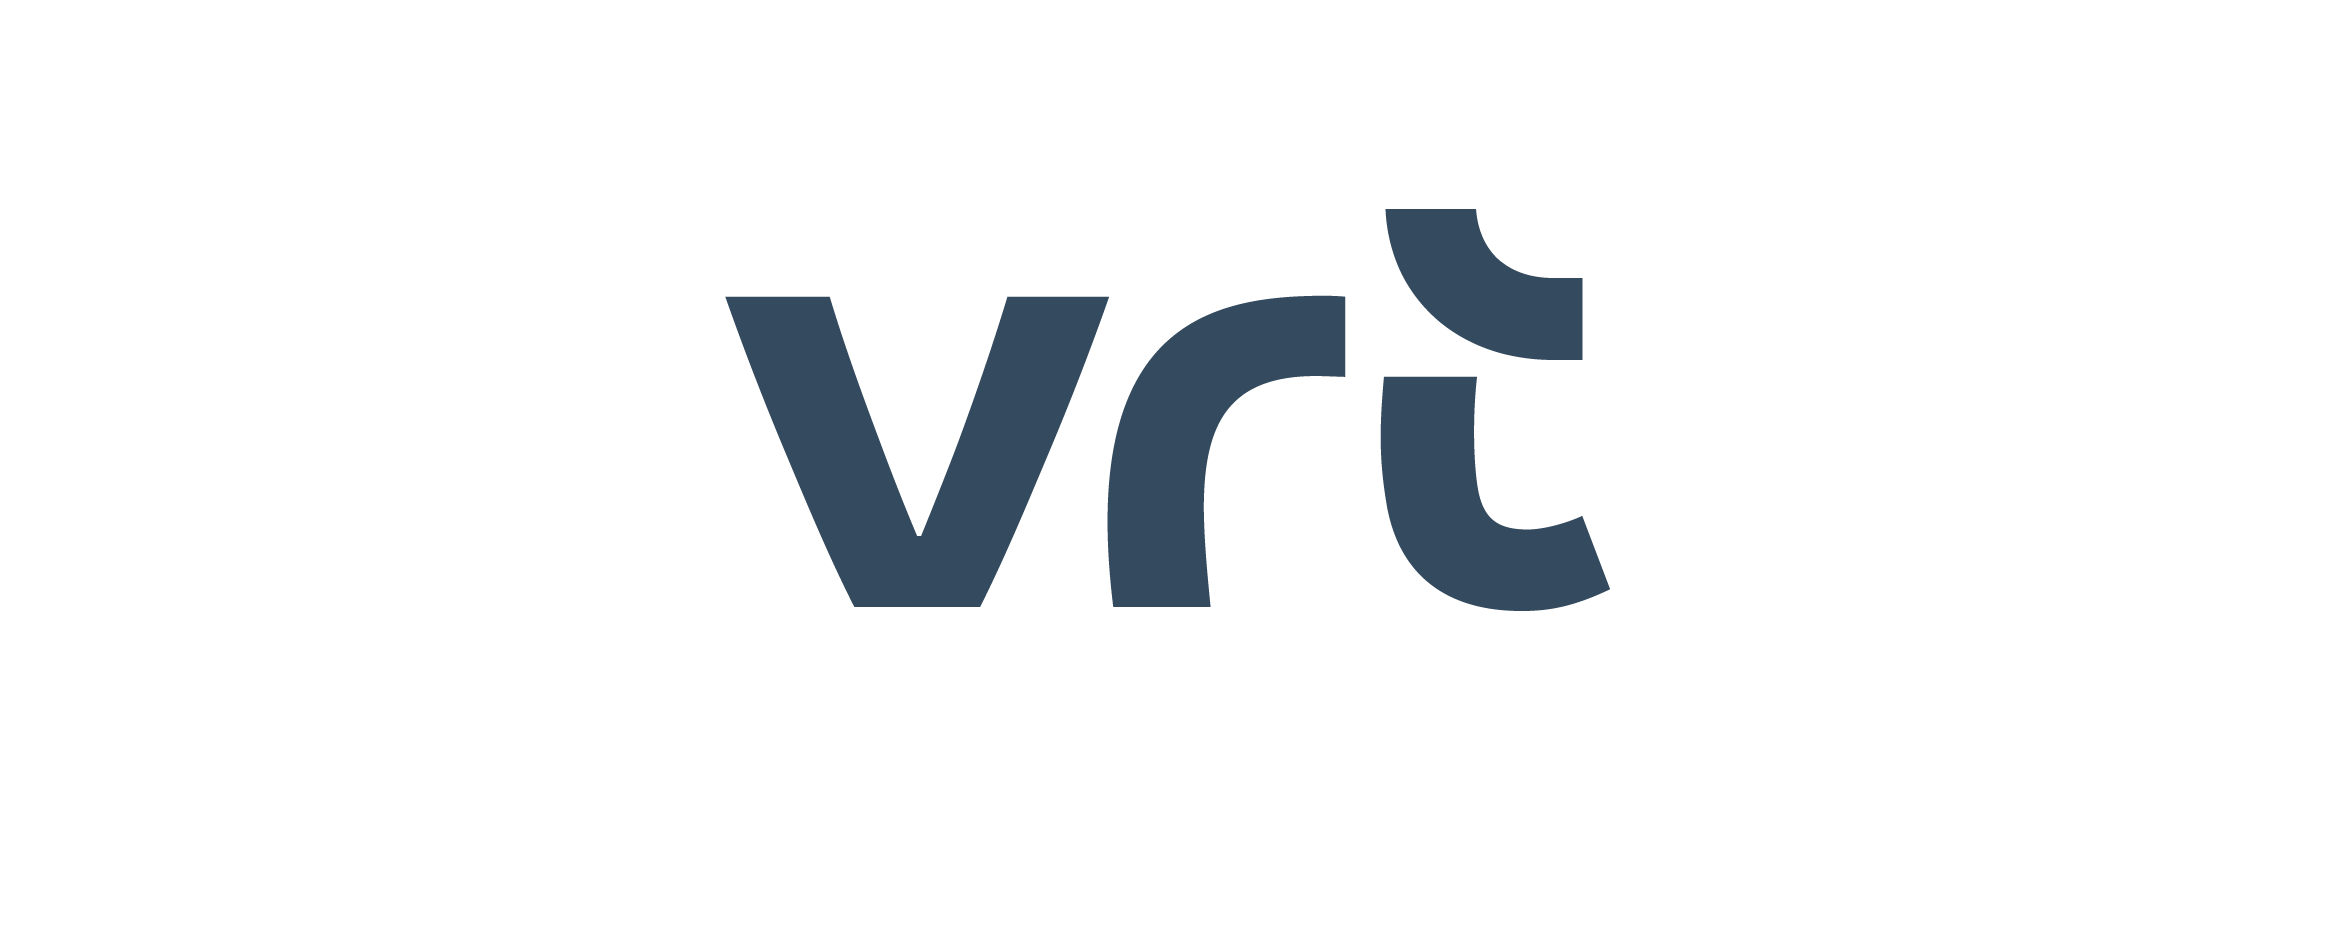 VRT_202552